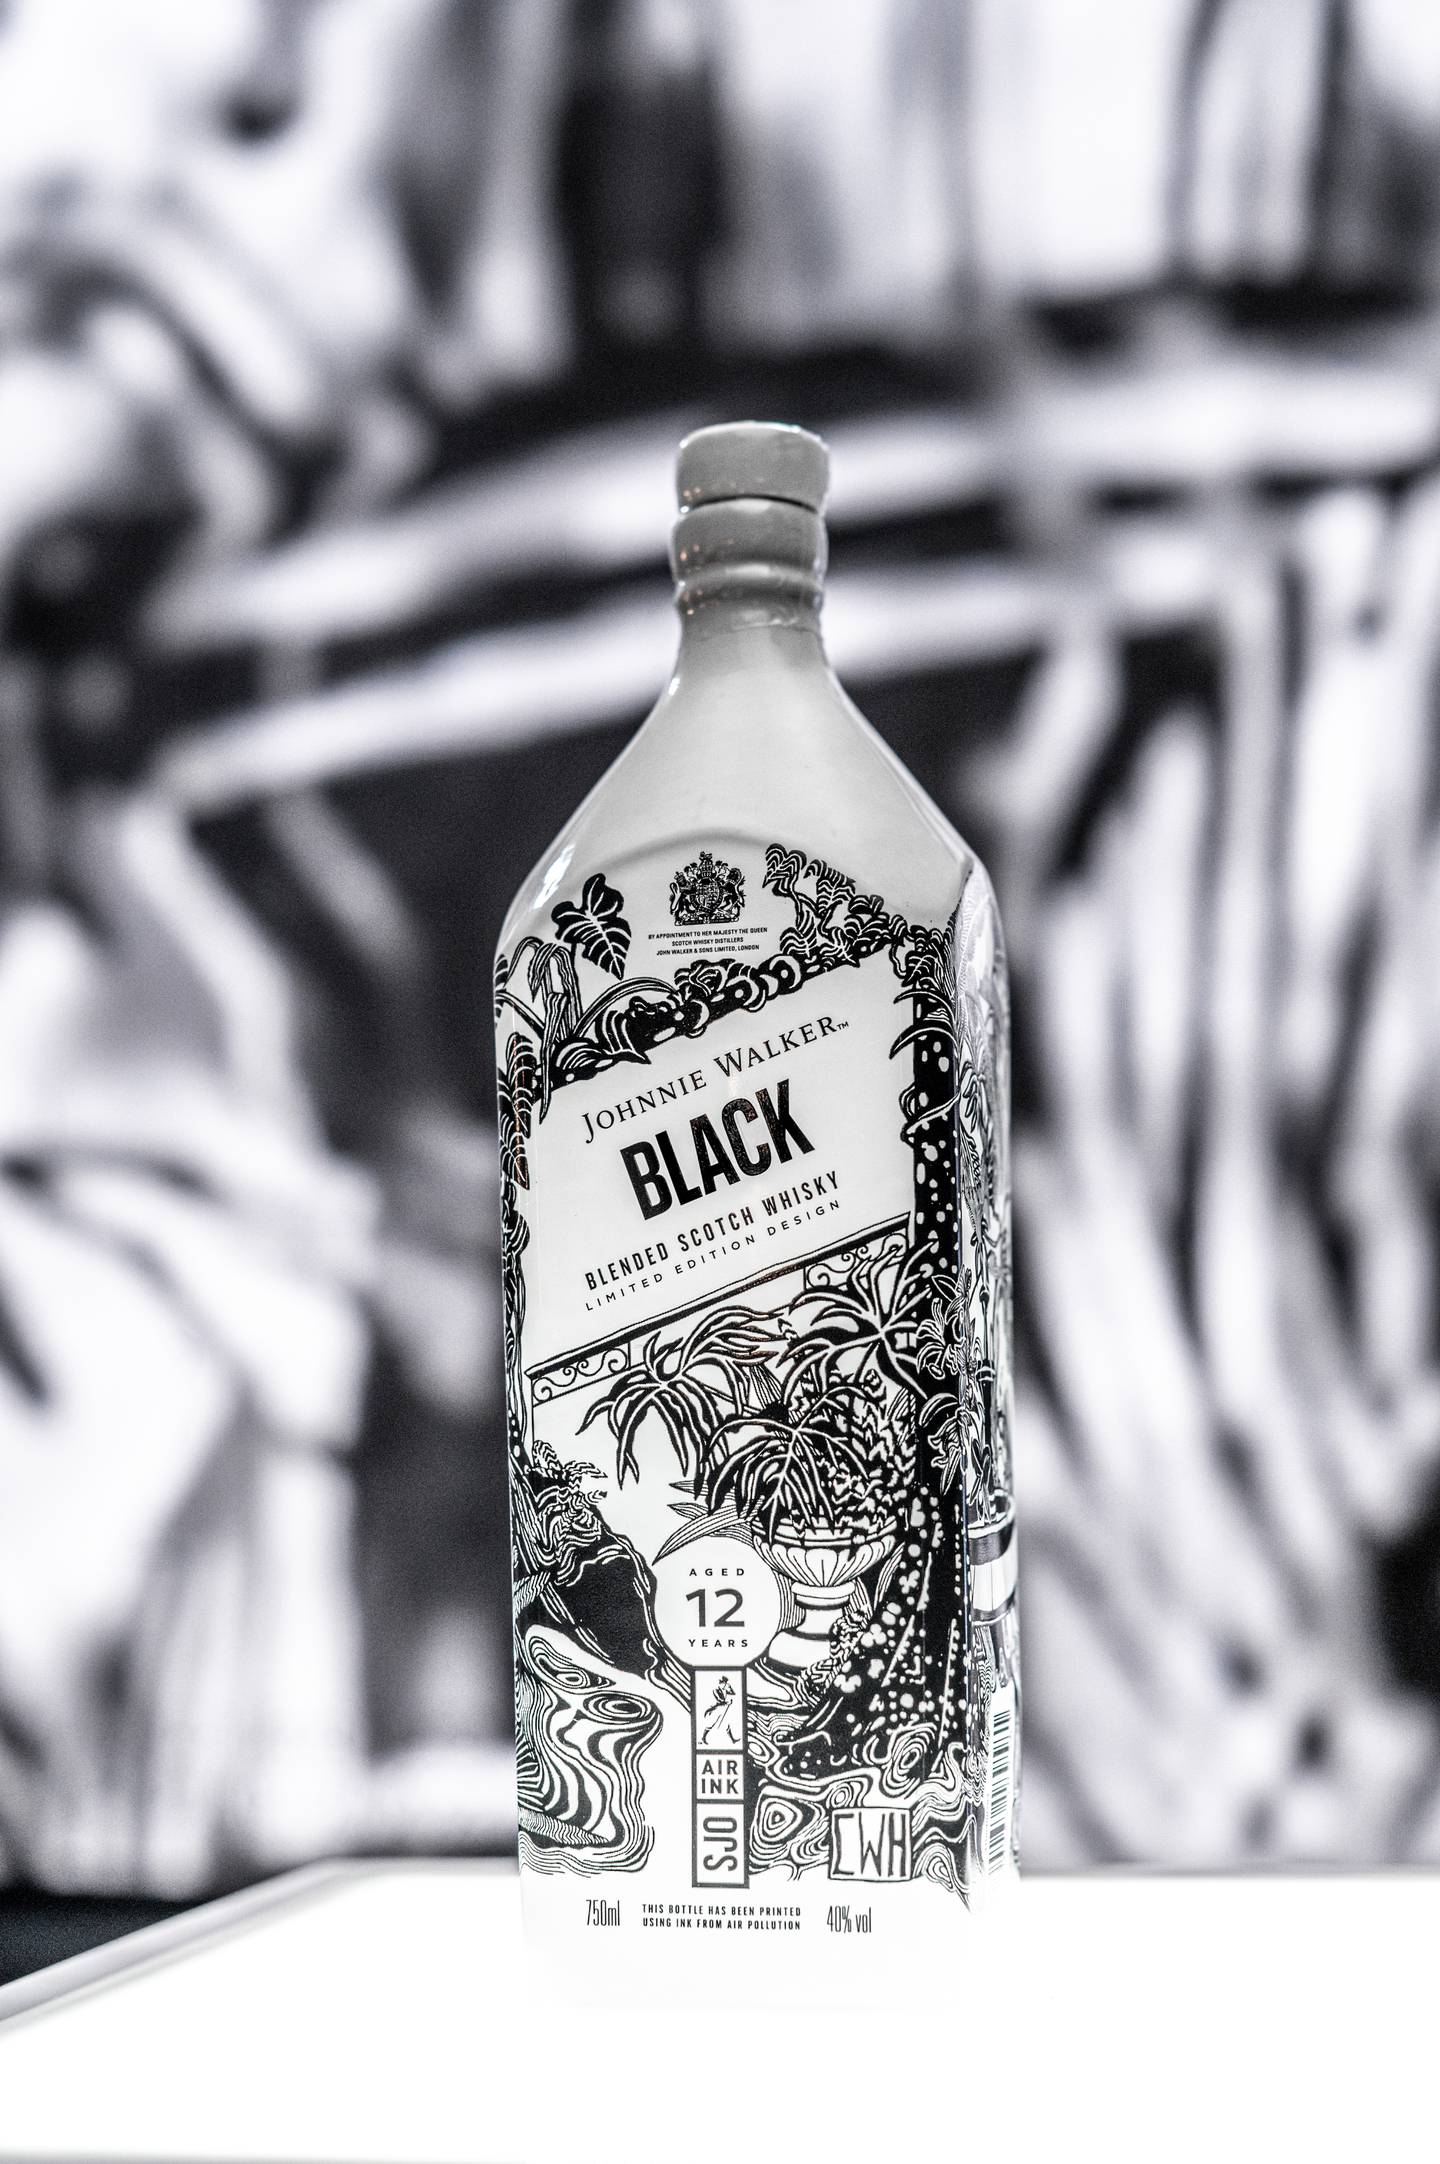 El artista costarricense Christian Wedel fue seleccionado en el “equipo mundial” de once pintores para con su arte ilustrar una botella muy exclusiva del mundialmente famoso whisky Johnny Walker.